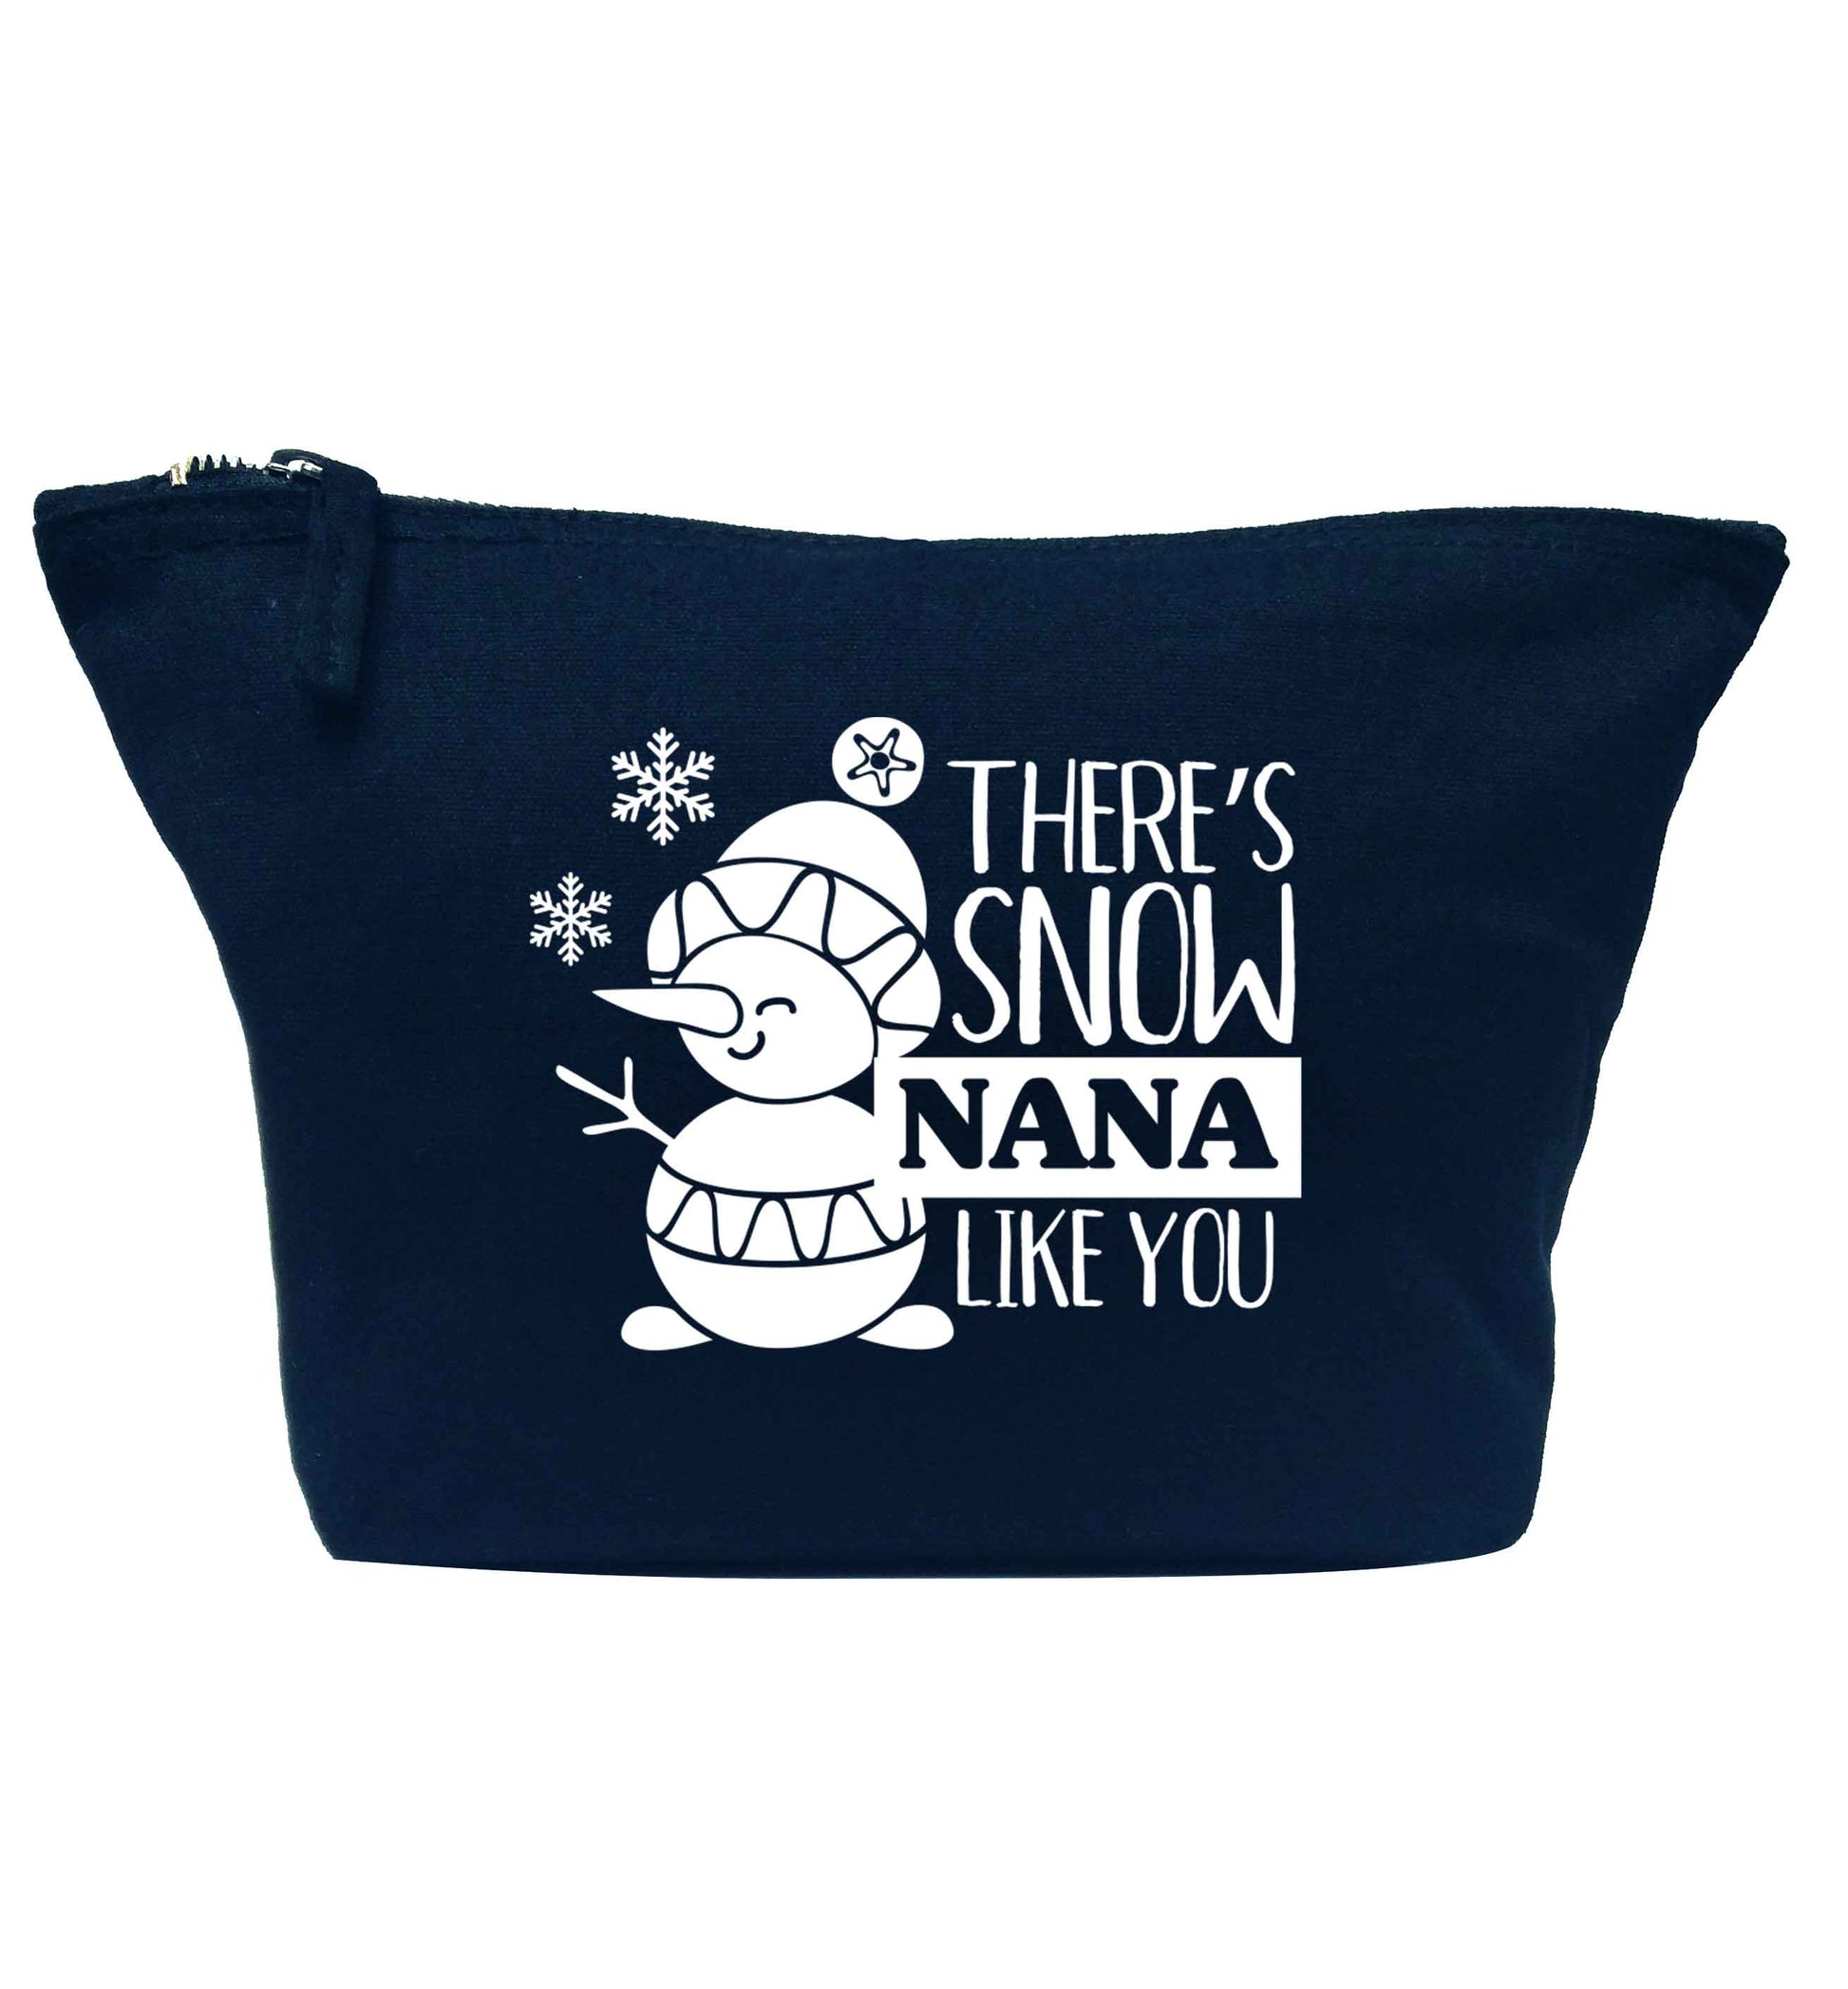 There's snow nana like you navy makeup bag